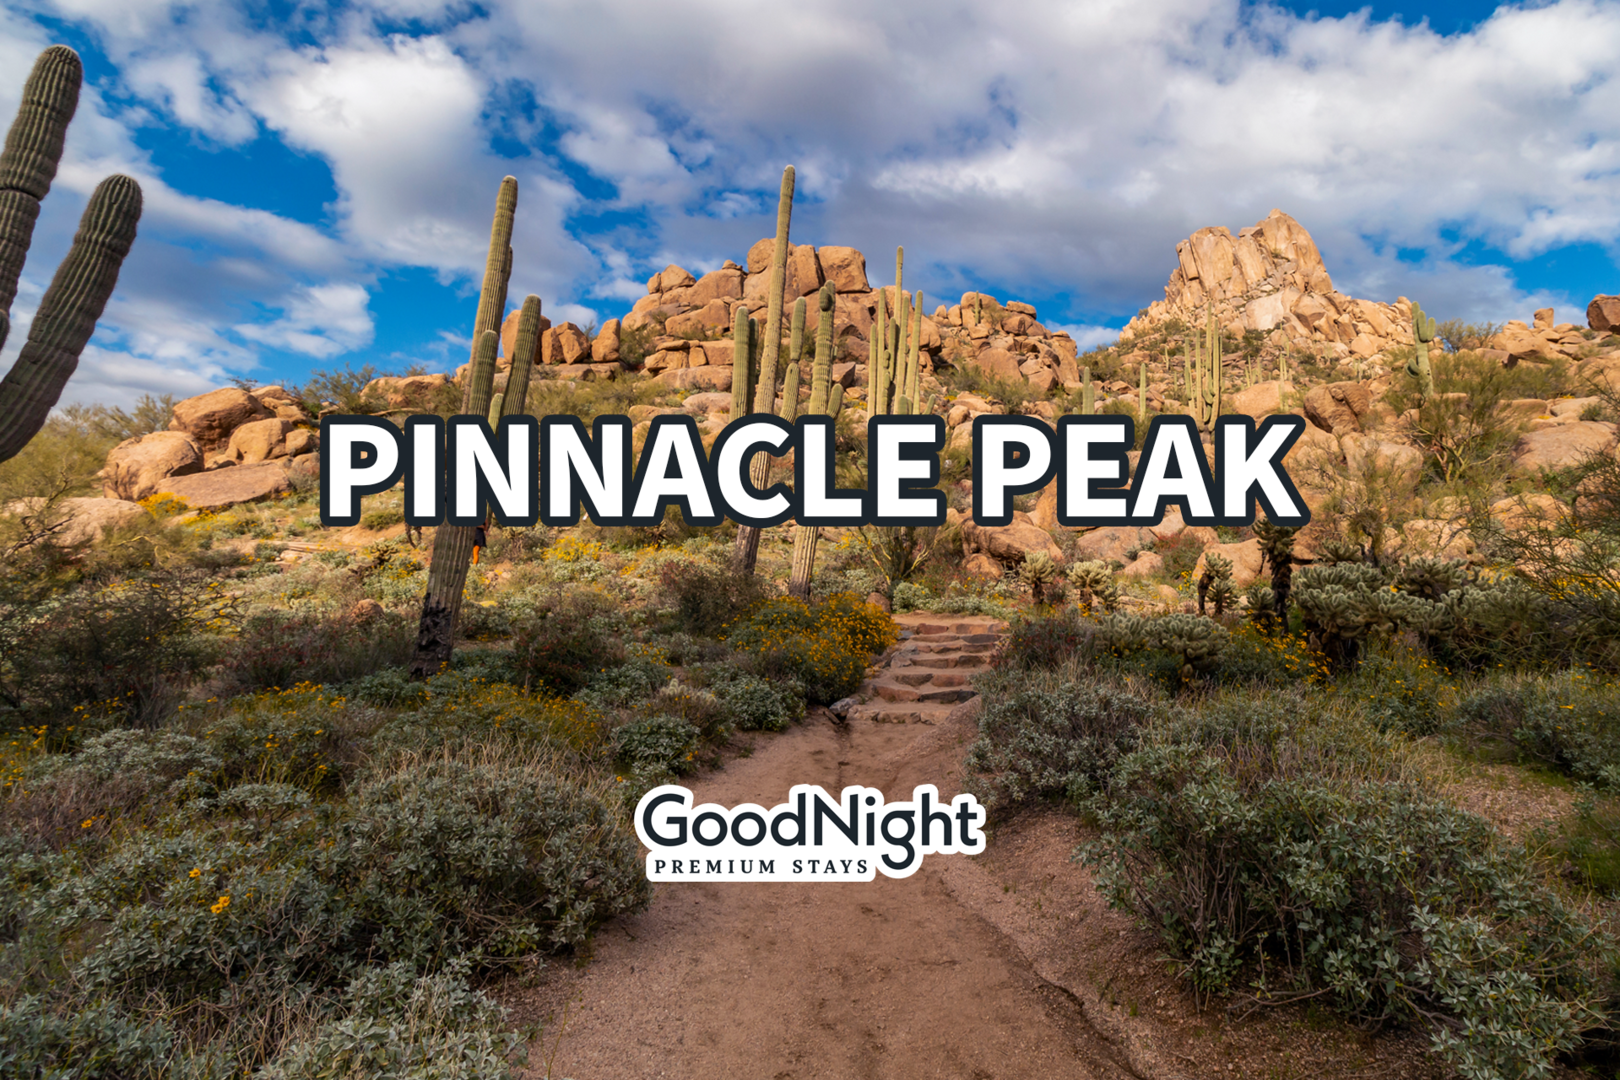 5 mins: Pinnacle Peak